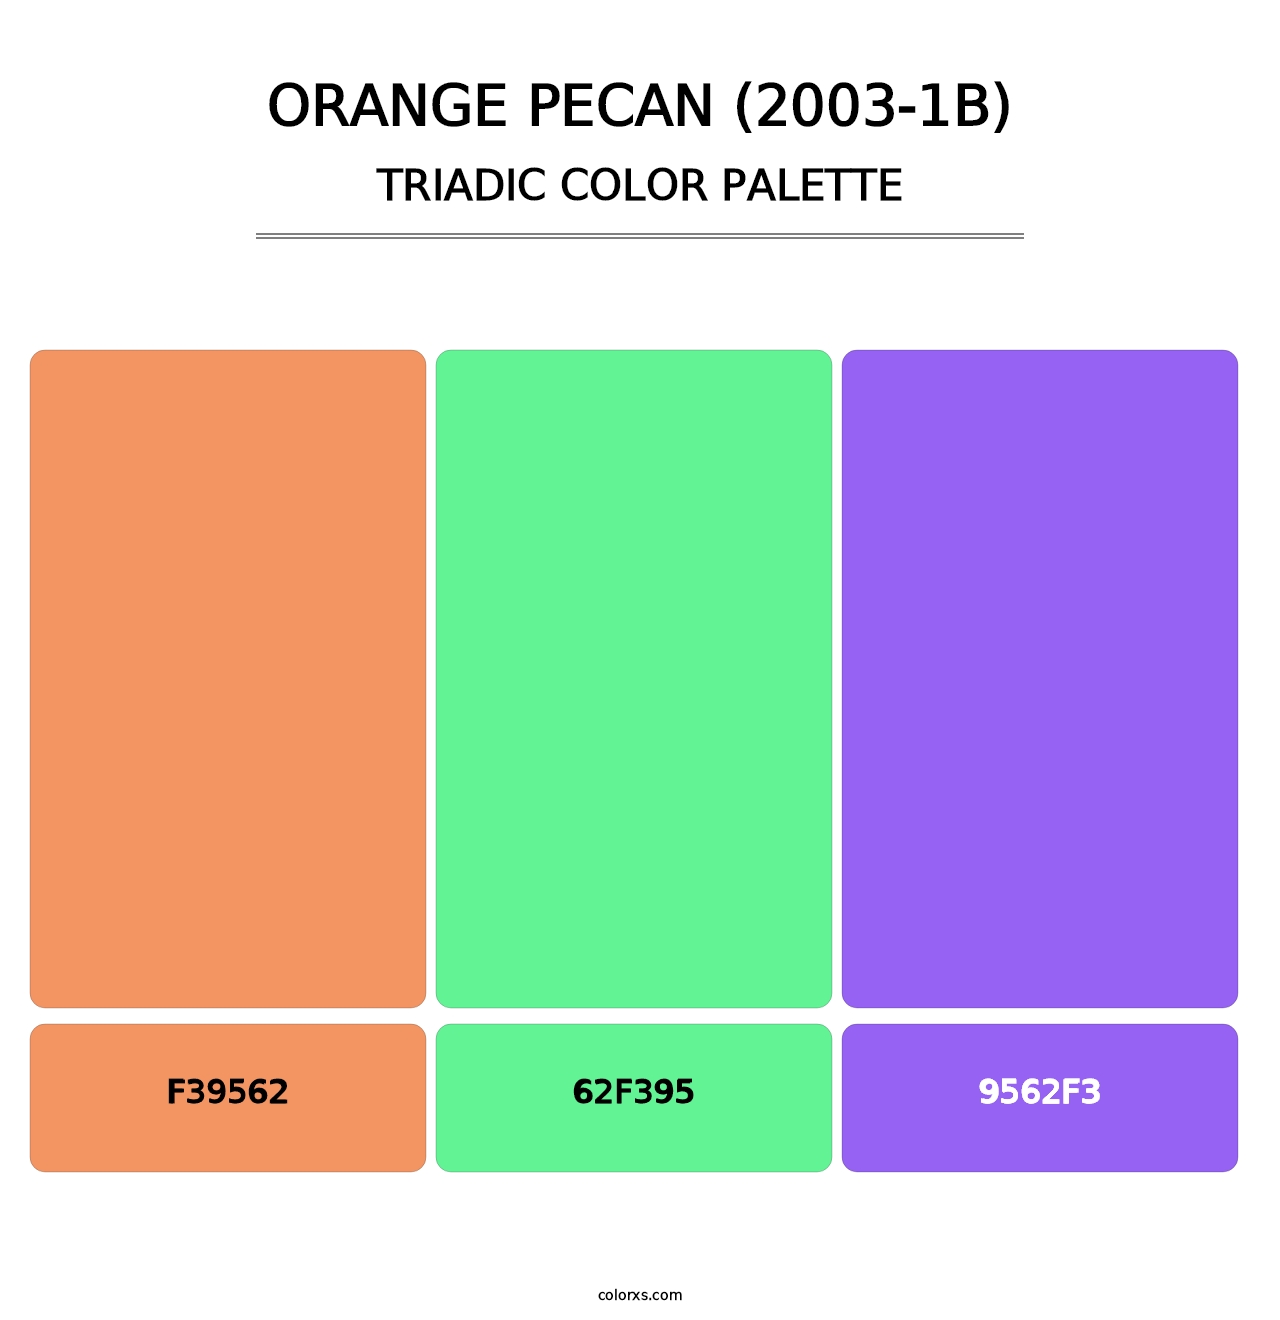 Orange Pecan (2003-1B) - Triadic Color Palette